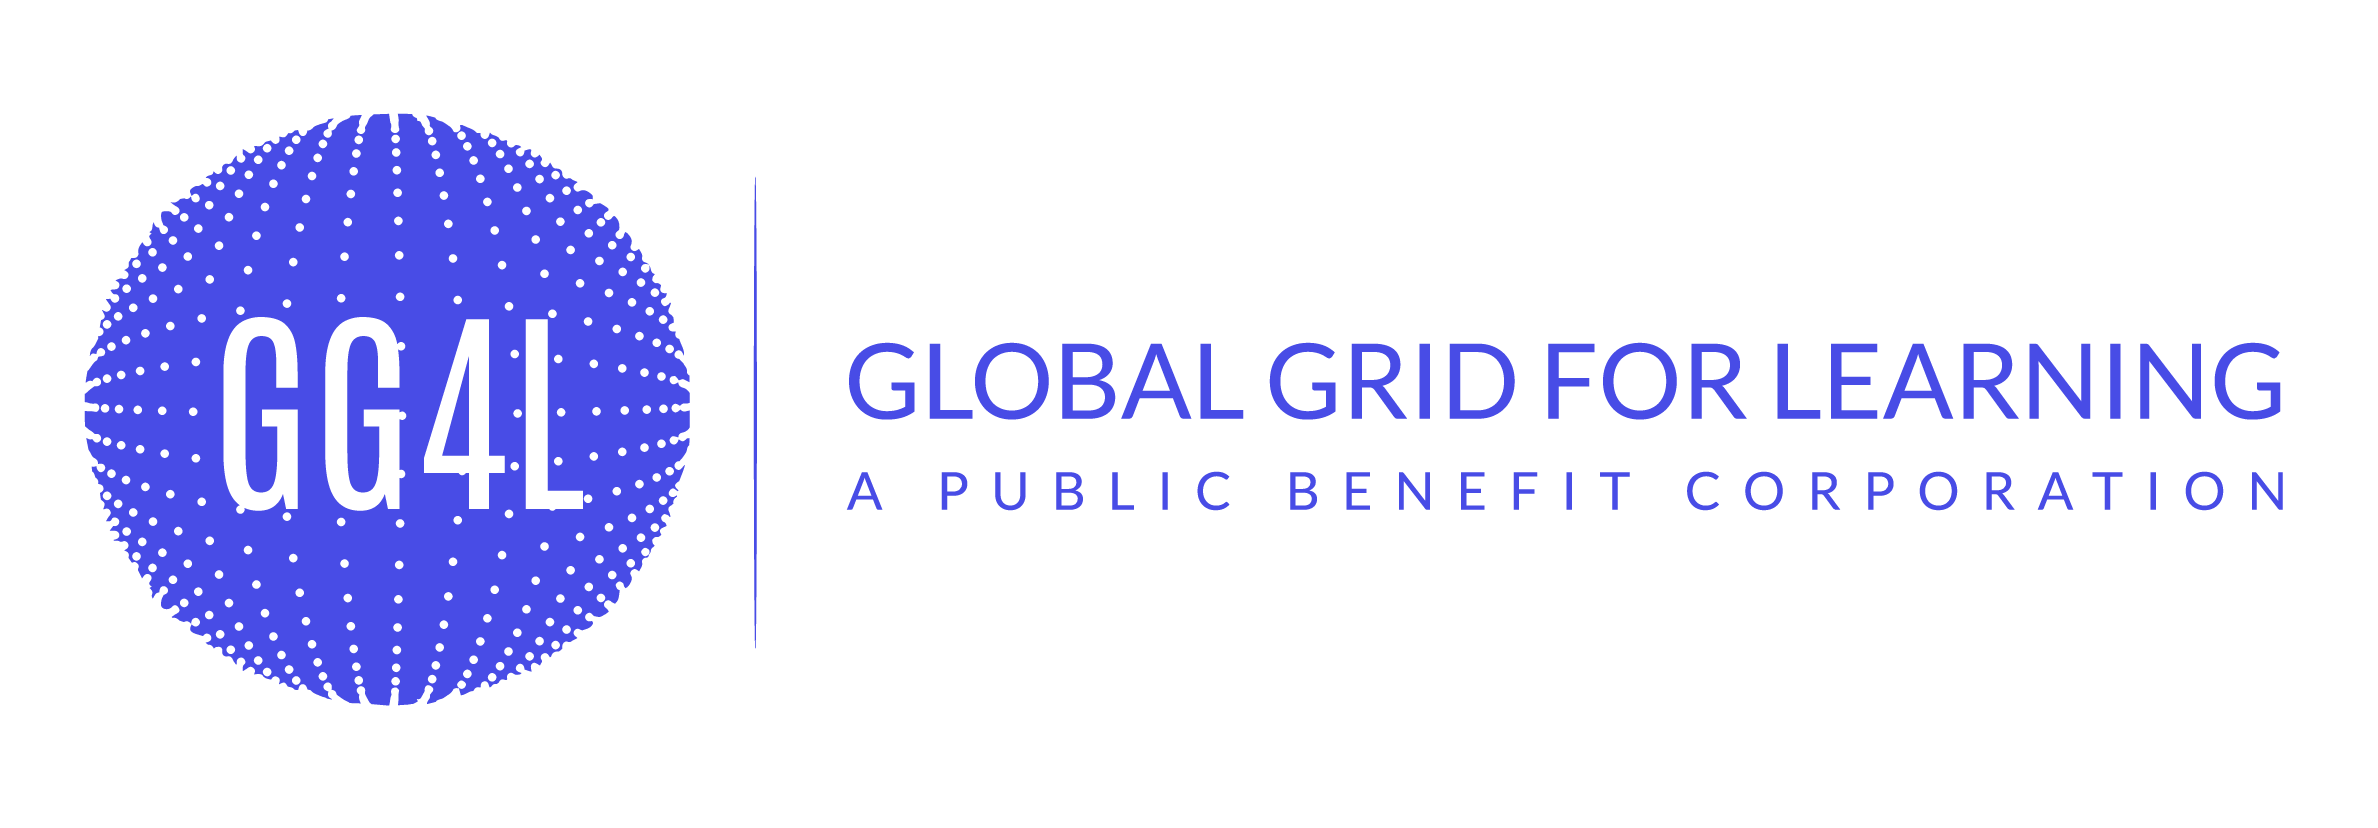 Global Grid for Learning partner logo